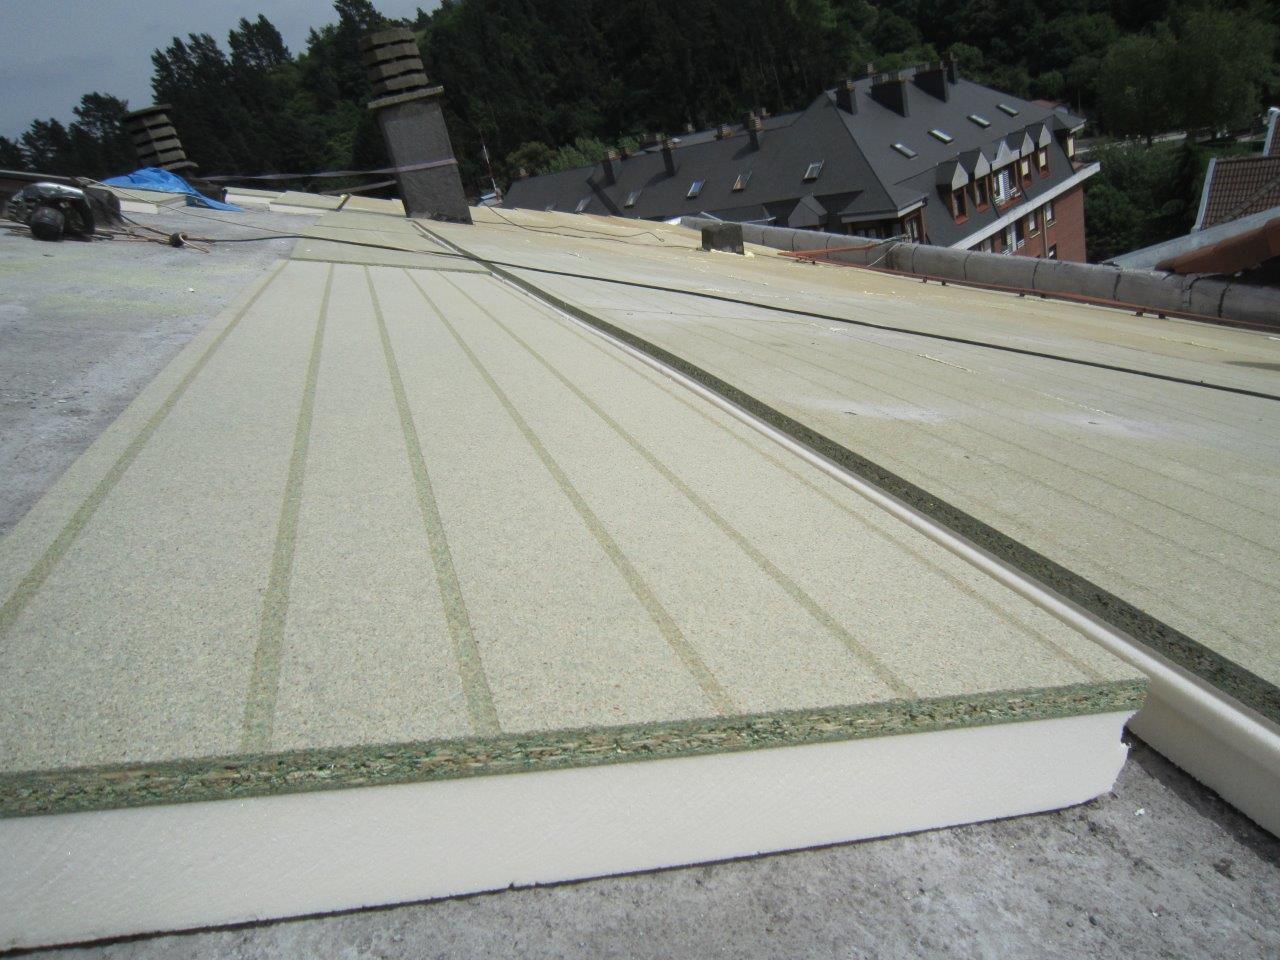 SIATE Onduline: Solución completa aislamiento de tejado